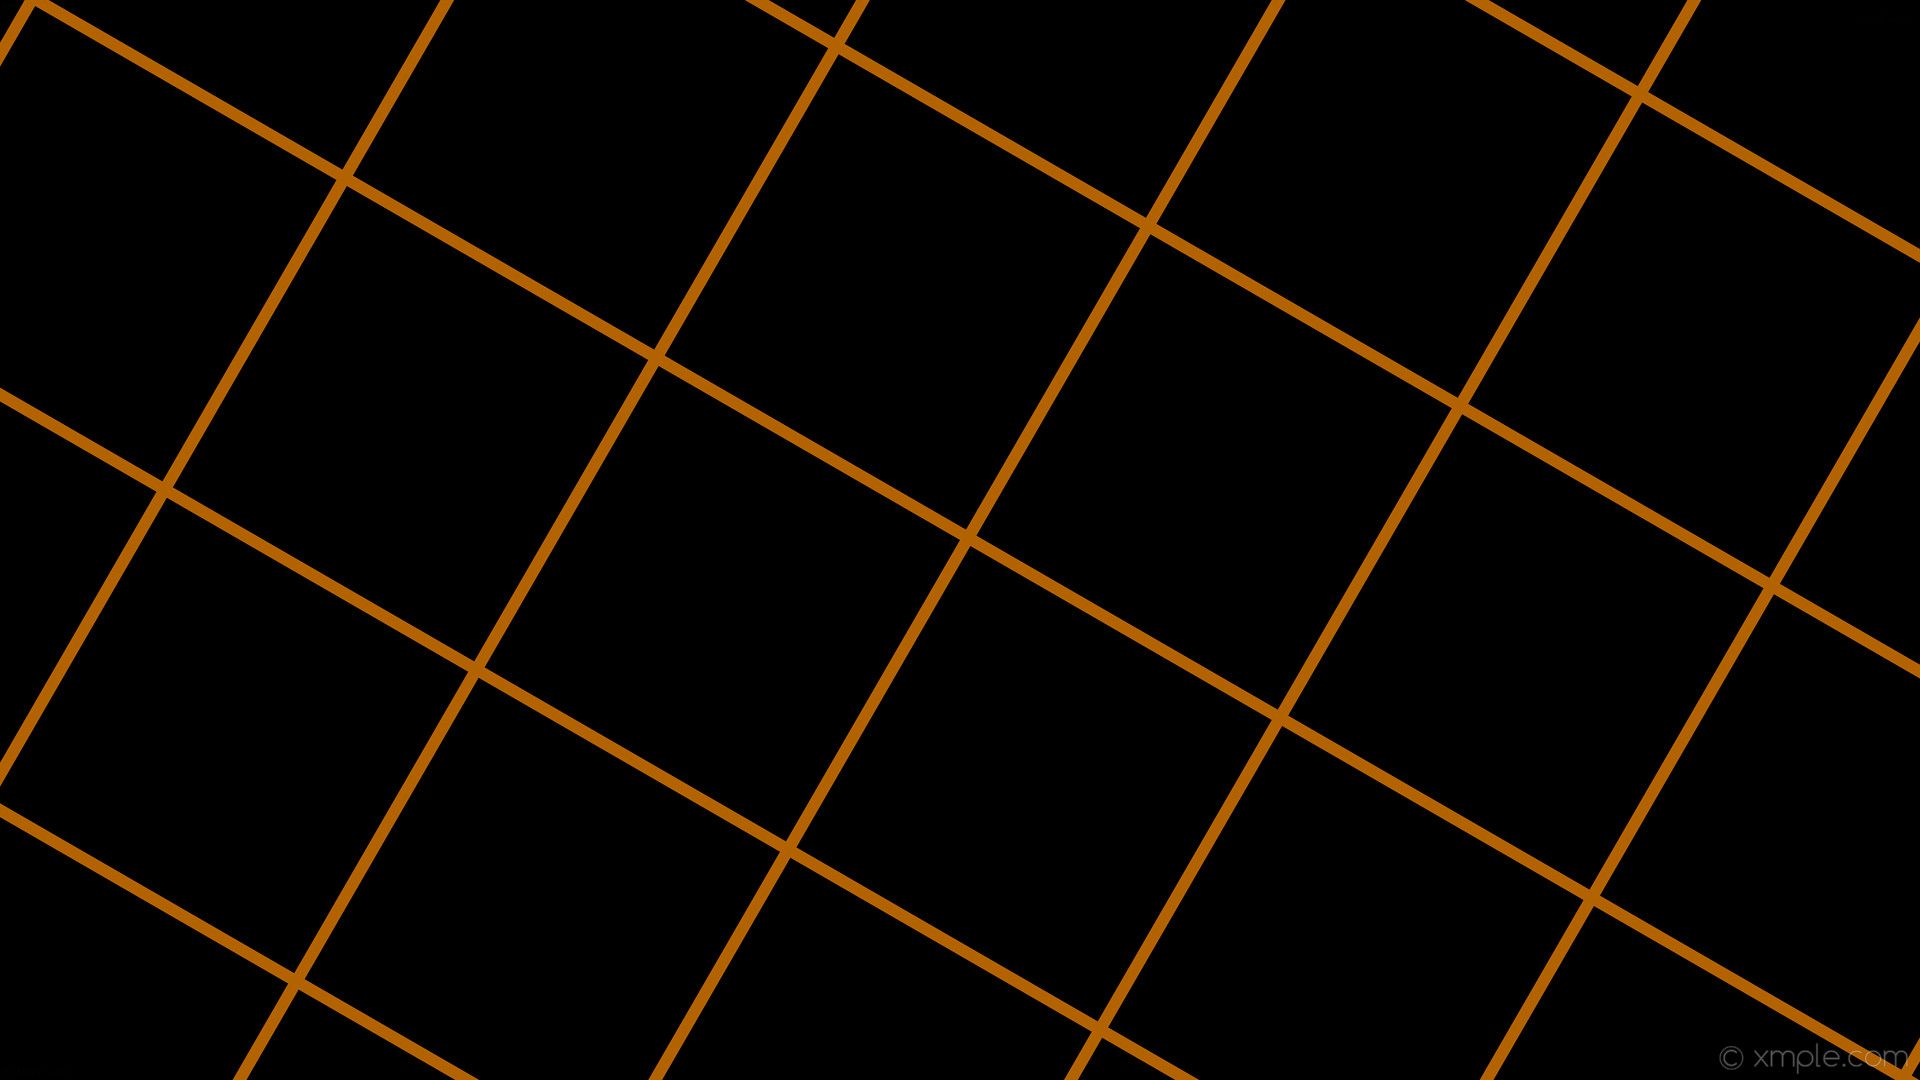 A black and orange patterned background - Dark orange